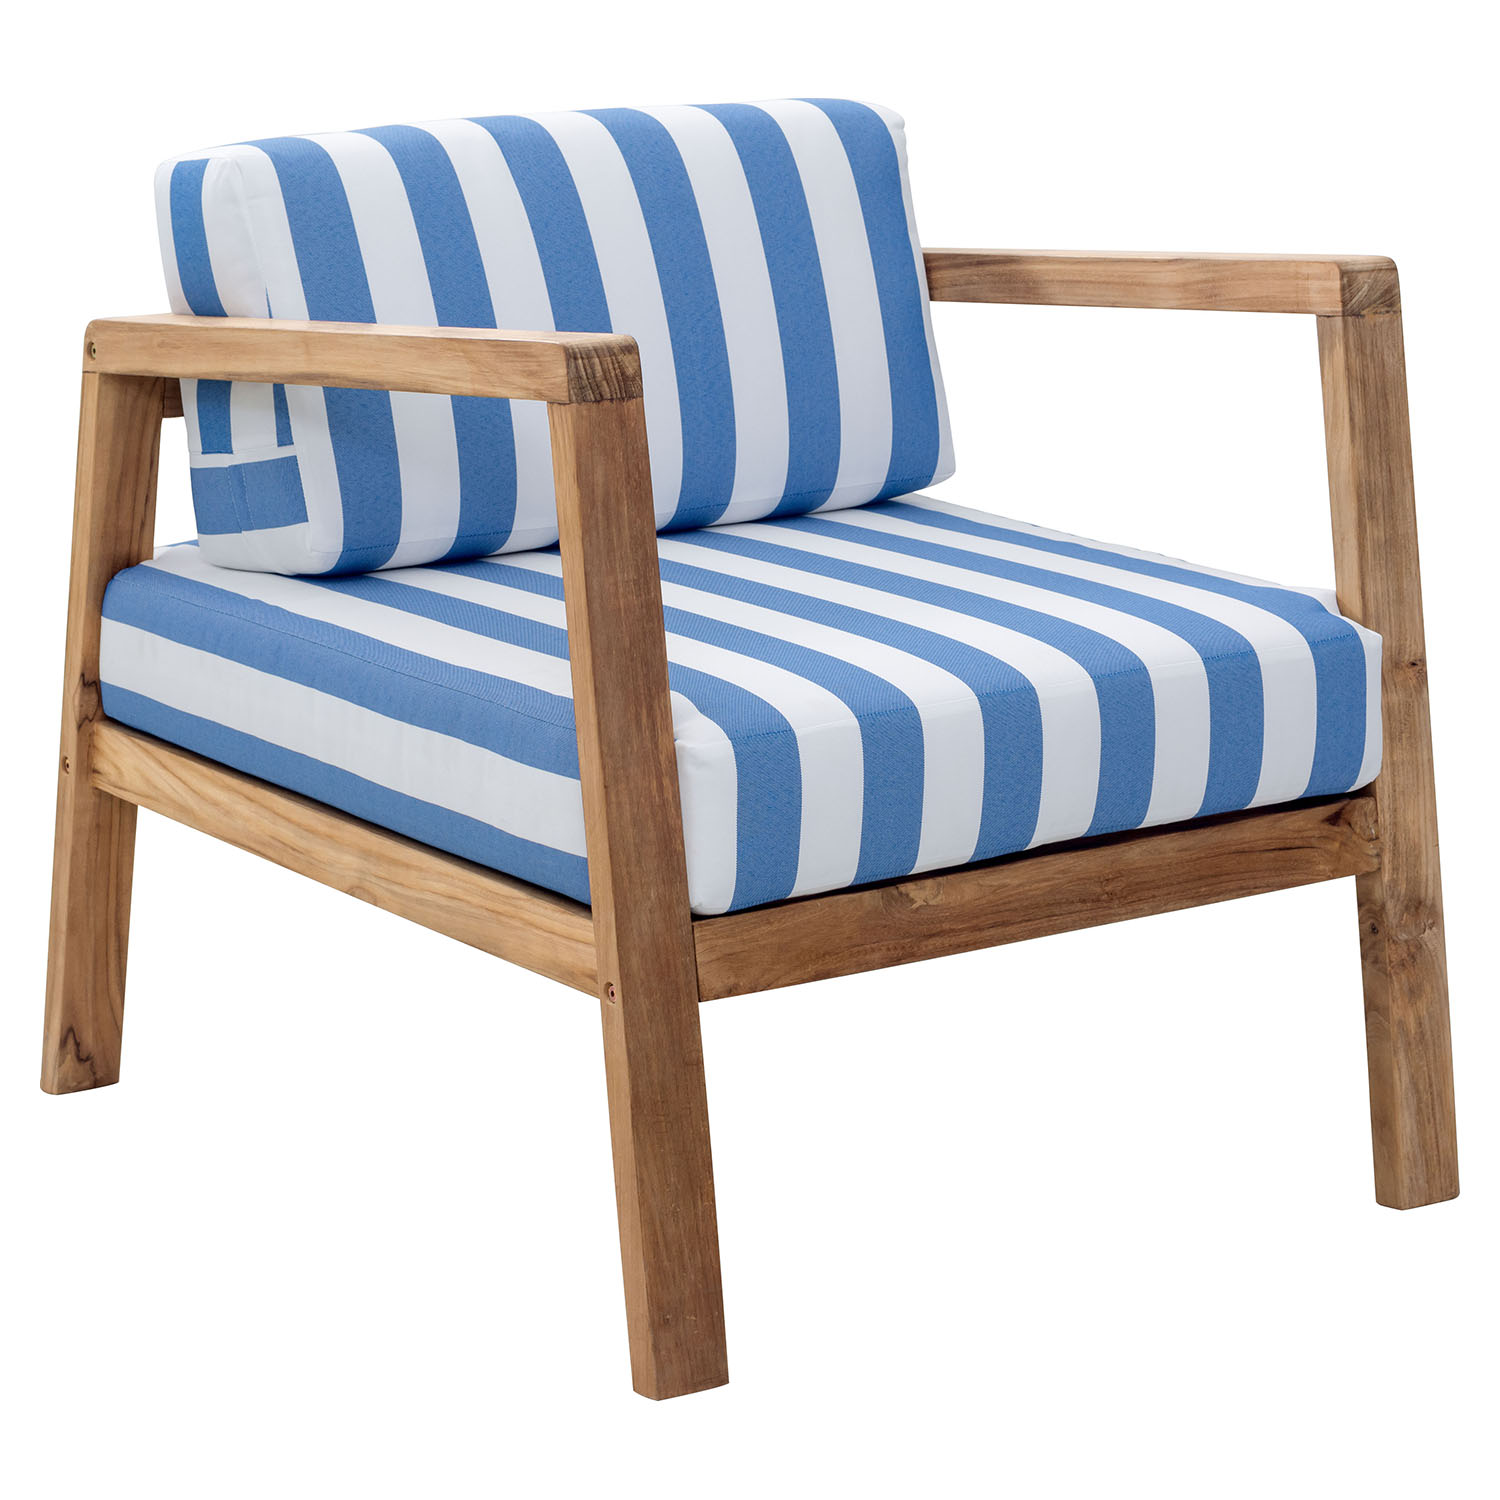 Bilander Arm Chair Cushion Blue and White DCG Stores